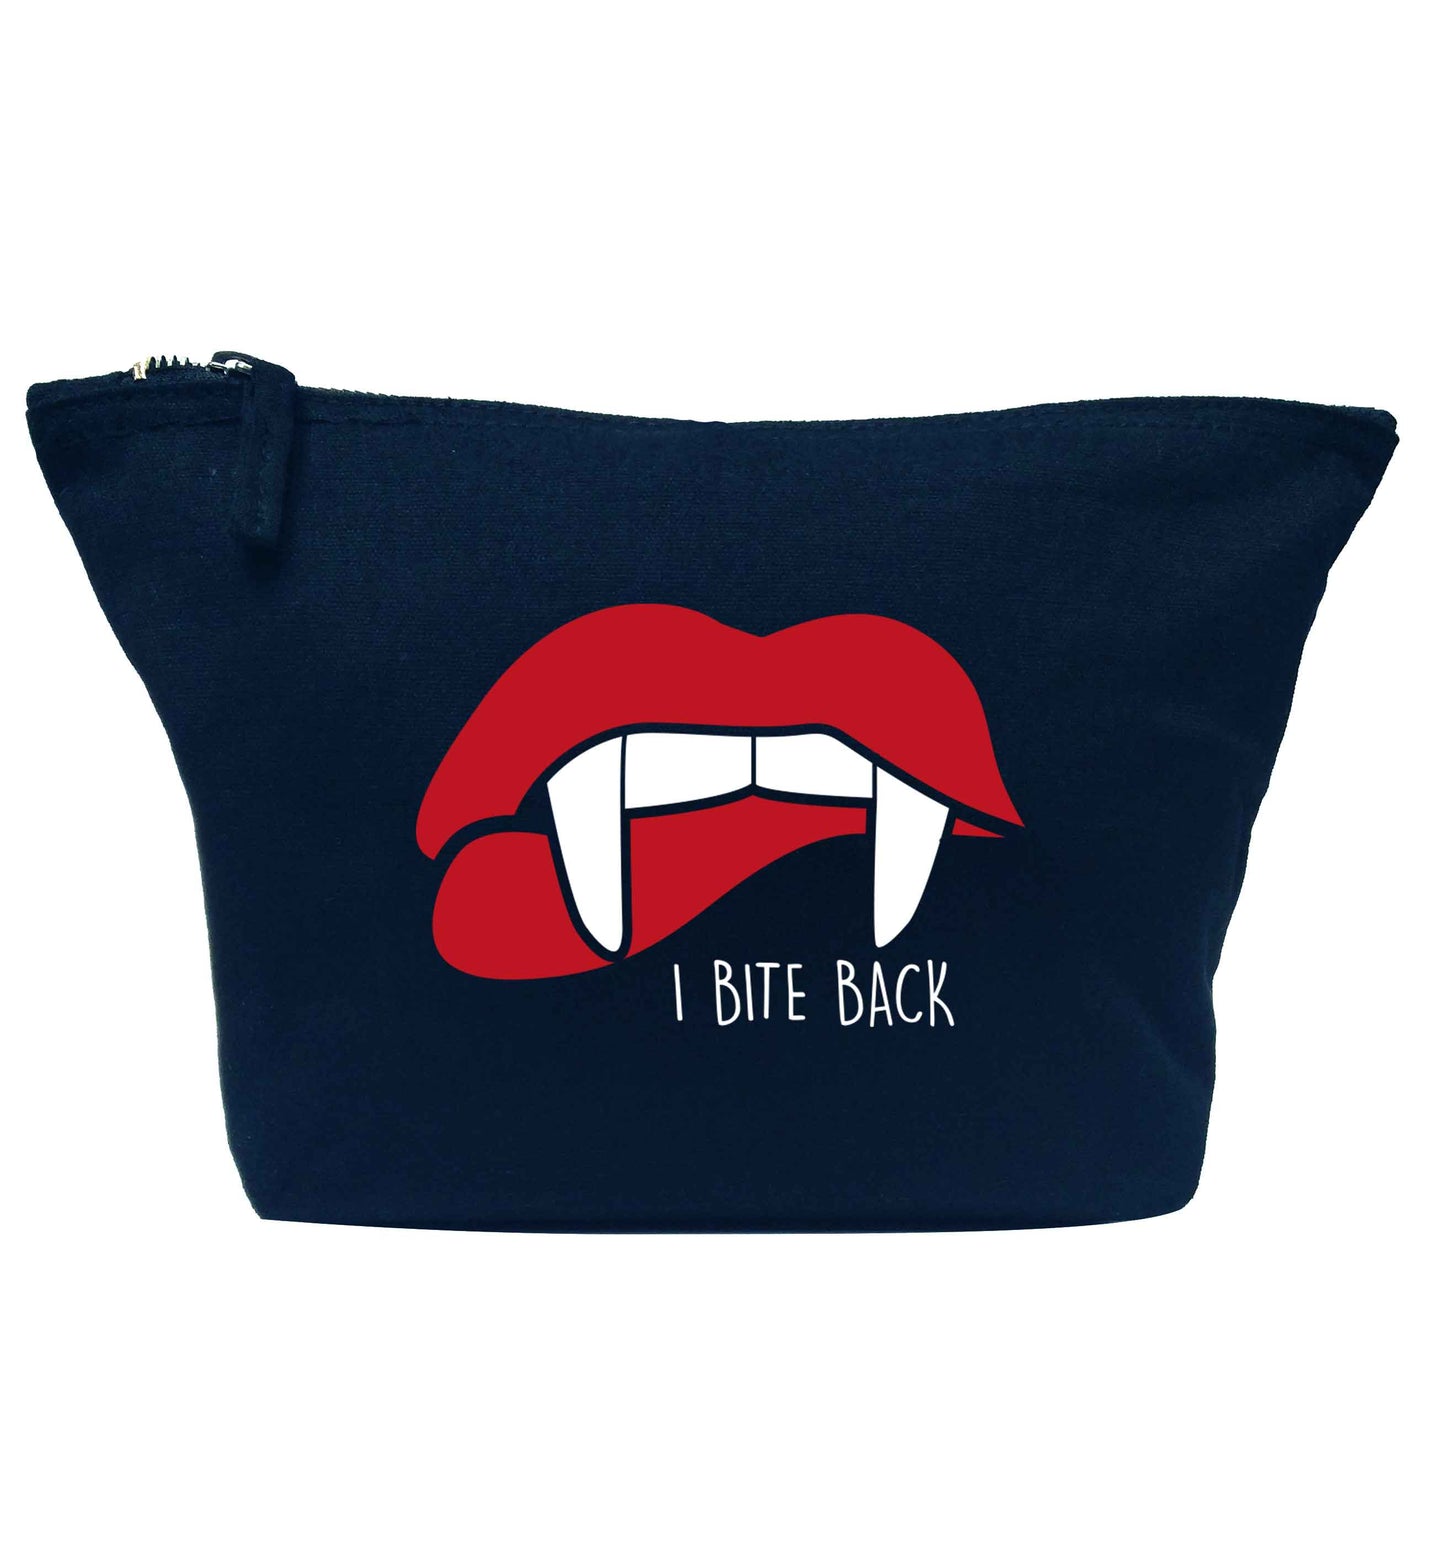 I bite back navy makeup bag